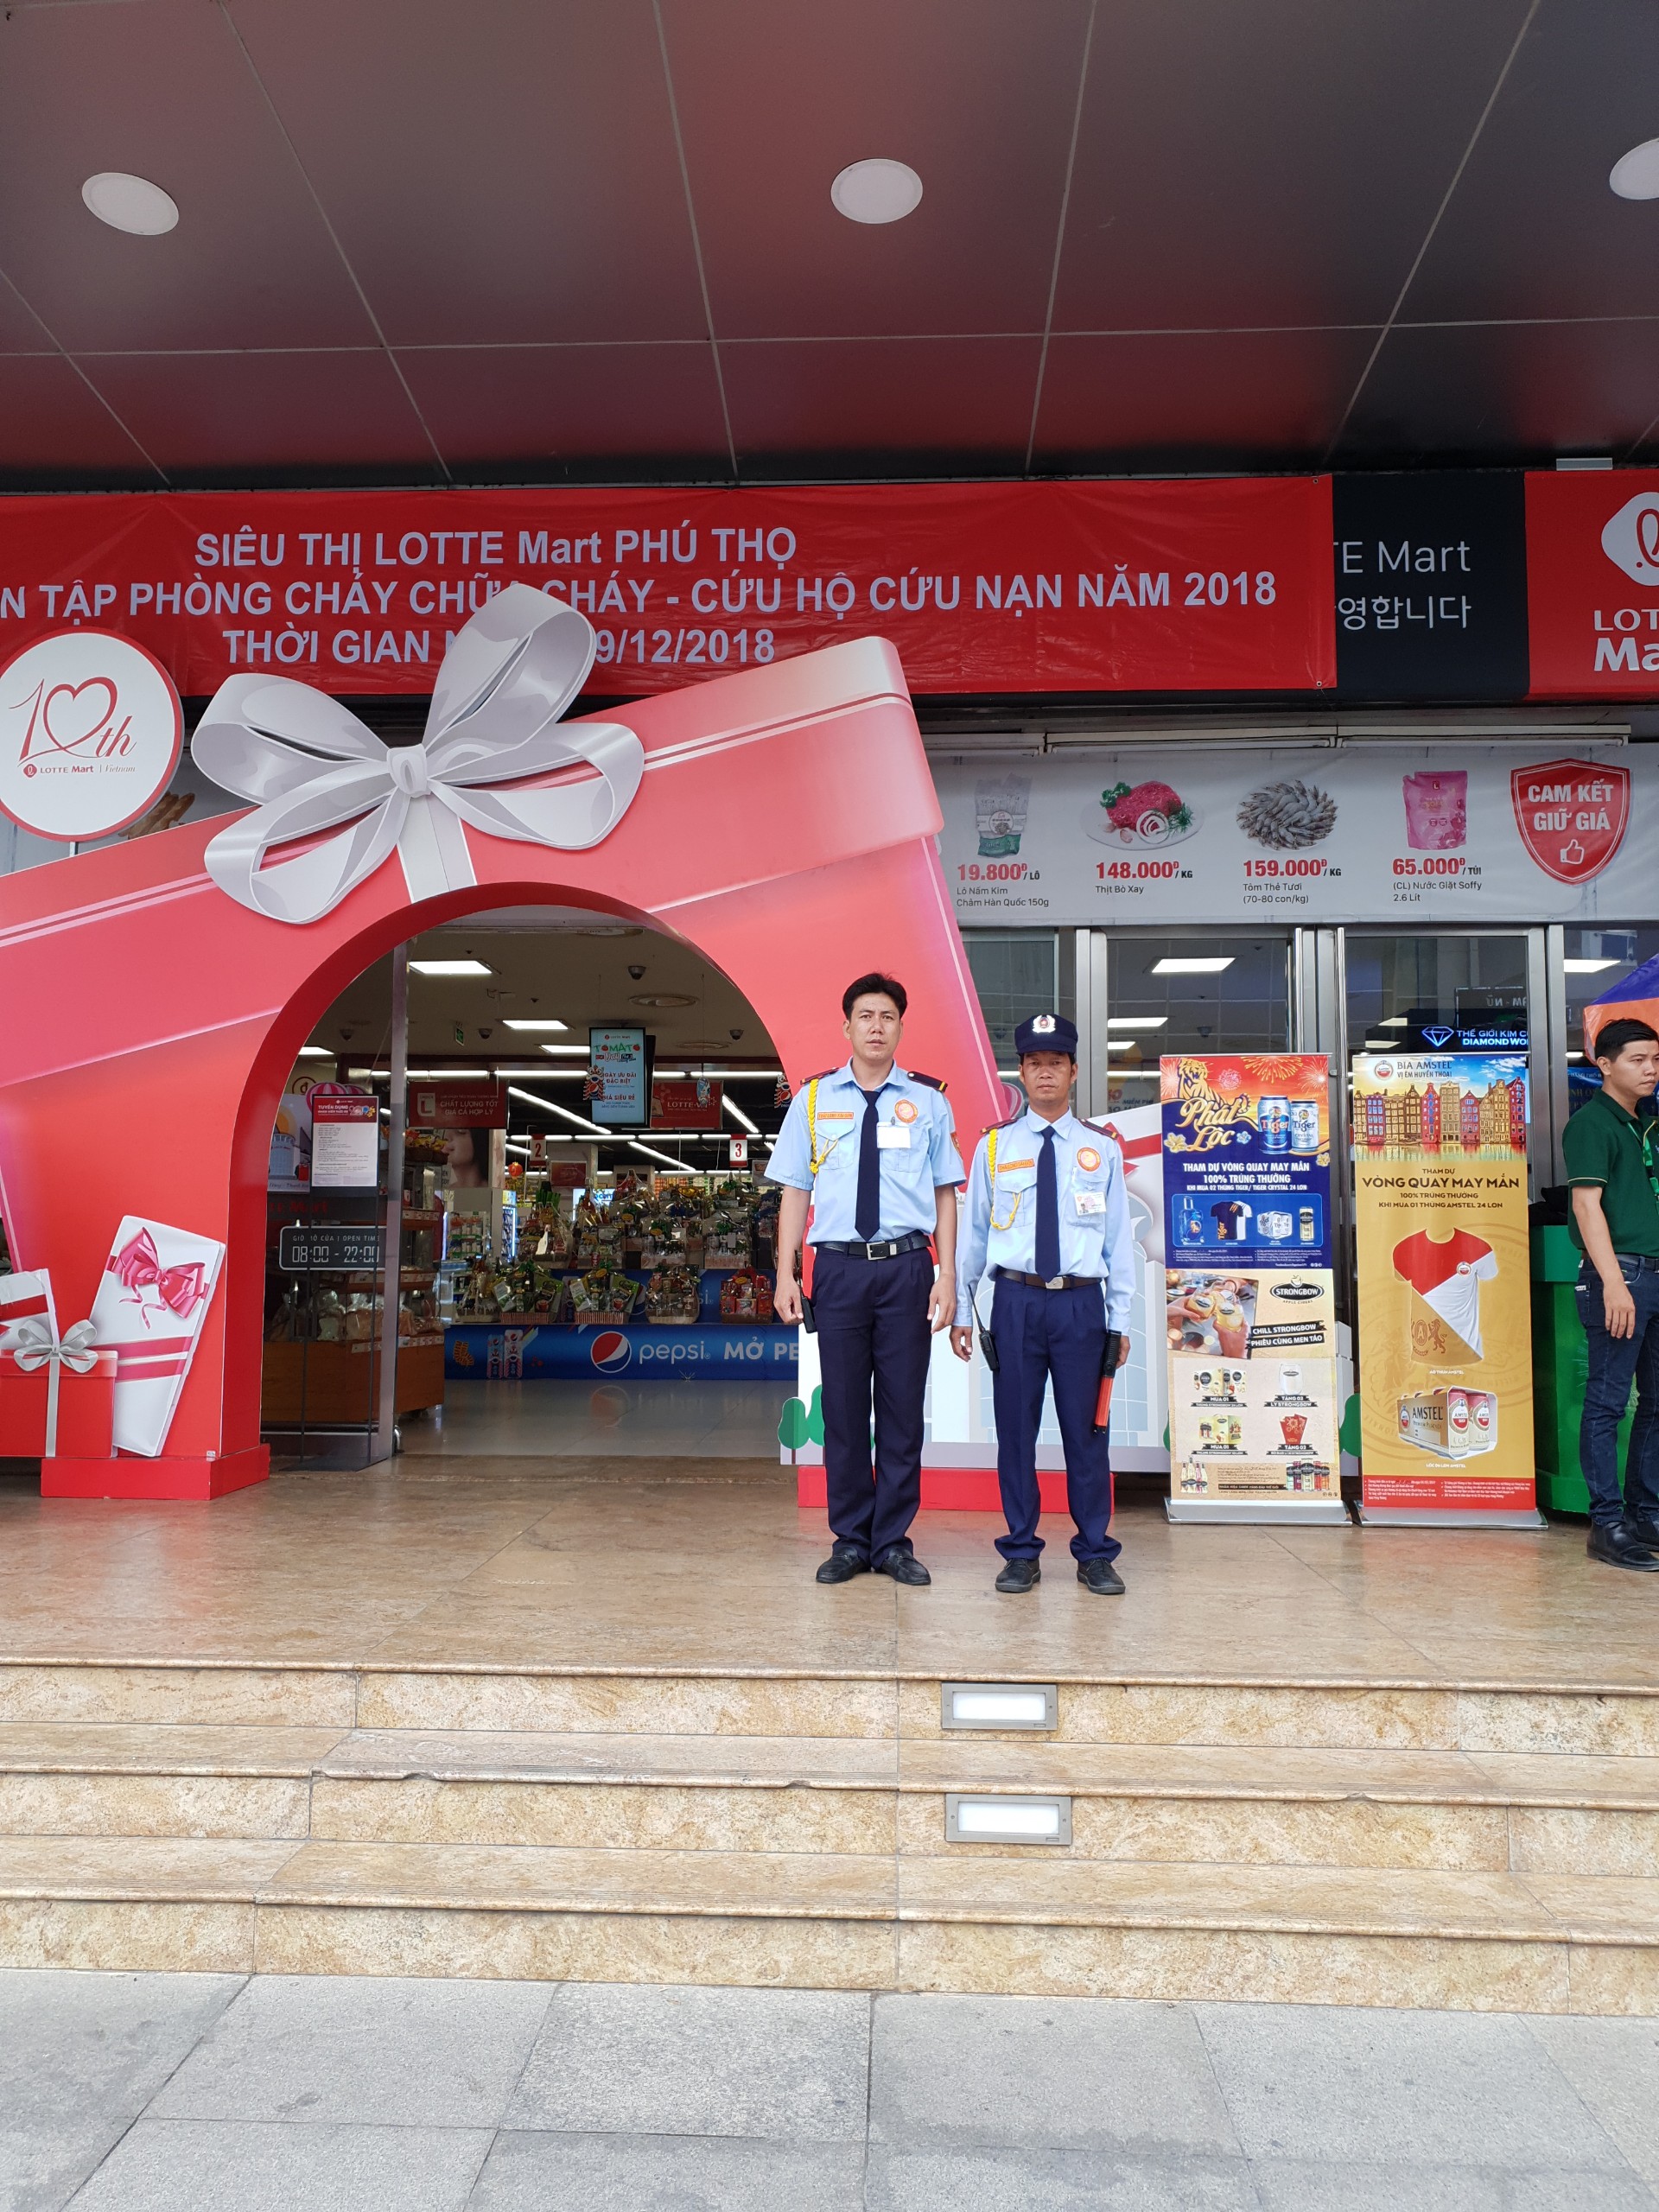 Bảo vệ siêu thị - Bảo Vệ Thái Long Sài Gòn - Công Ty TNHH Dịch Vụ Bảo Vệ Thái Long Sài Gòn